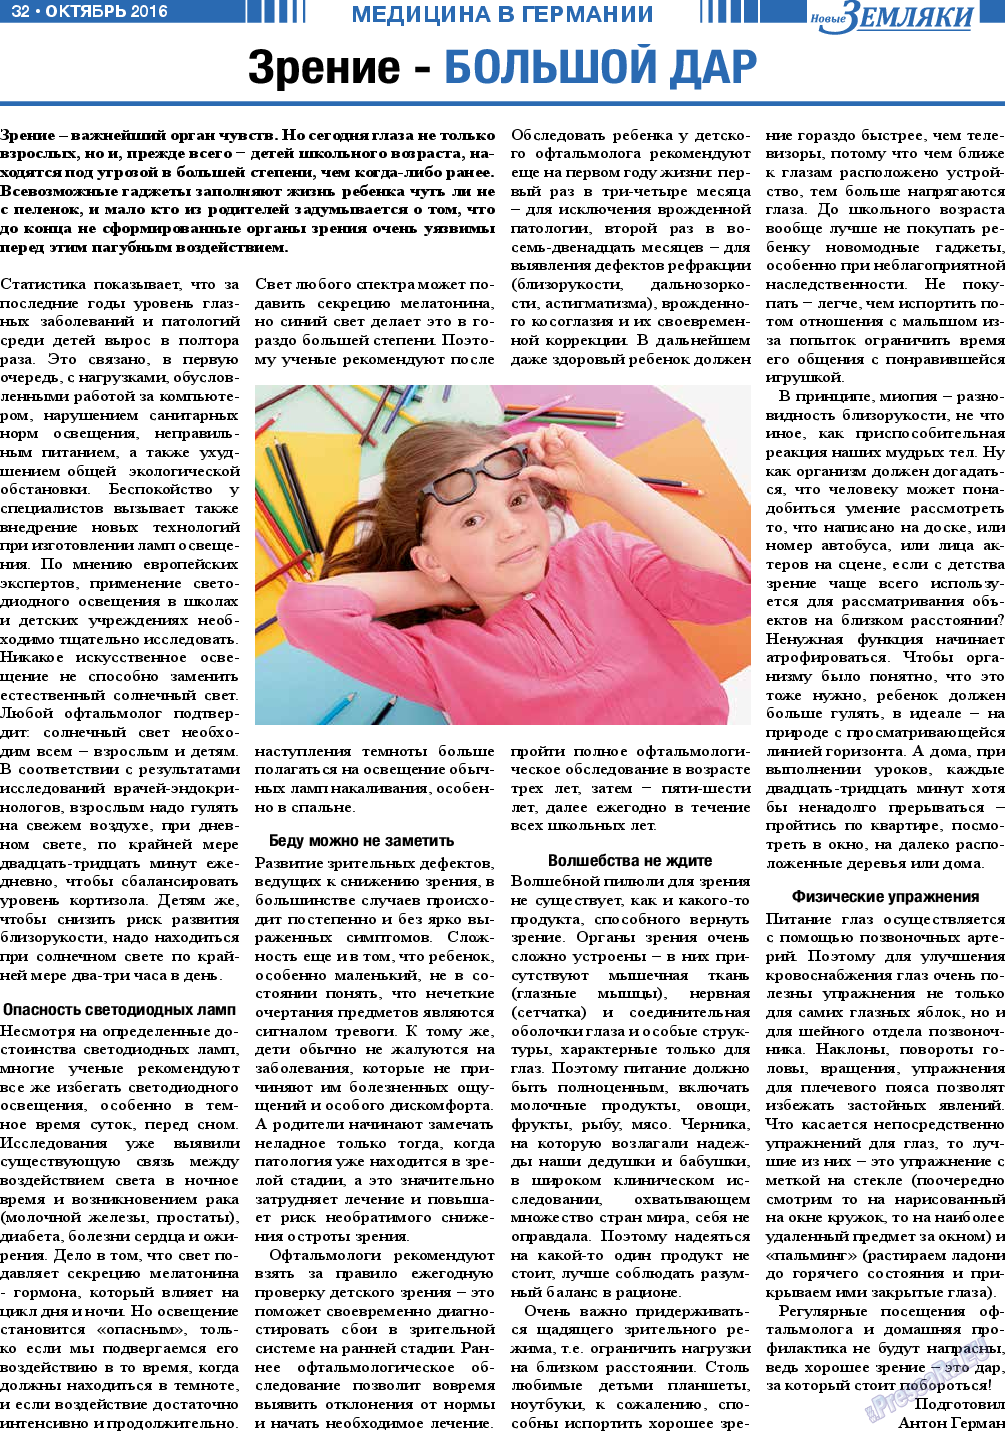 Новые Земляки, газета. 2016 №10 стр.32